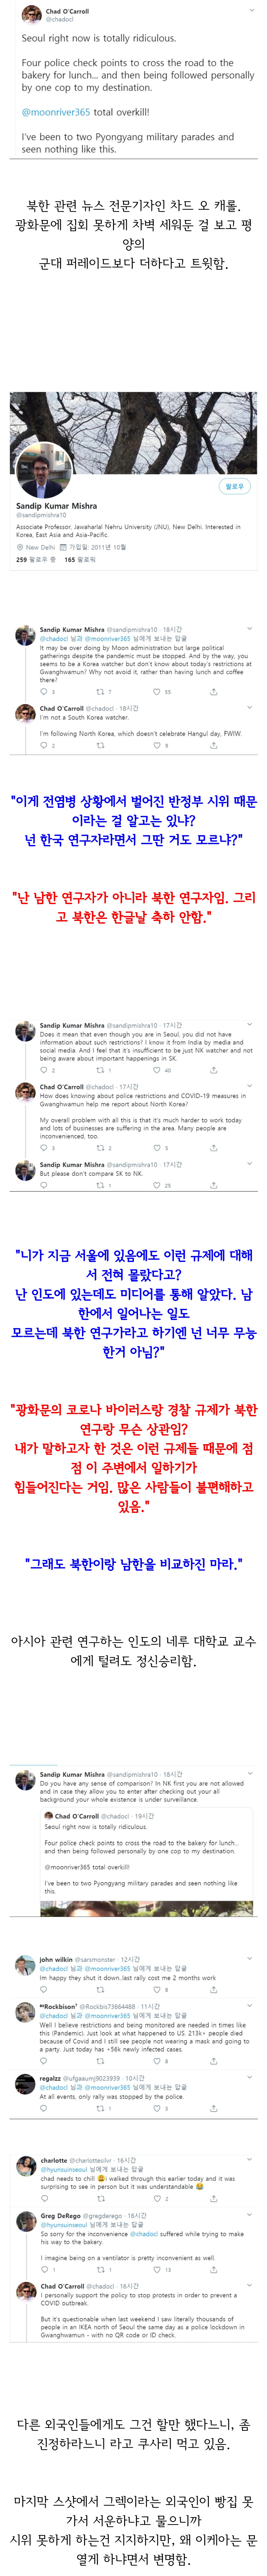 광화문차단 비판한 북한취재전문 외국인기자